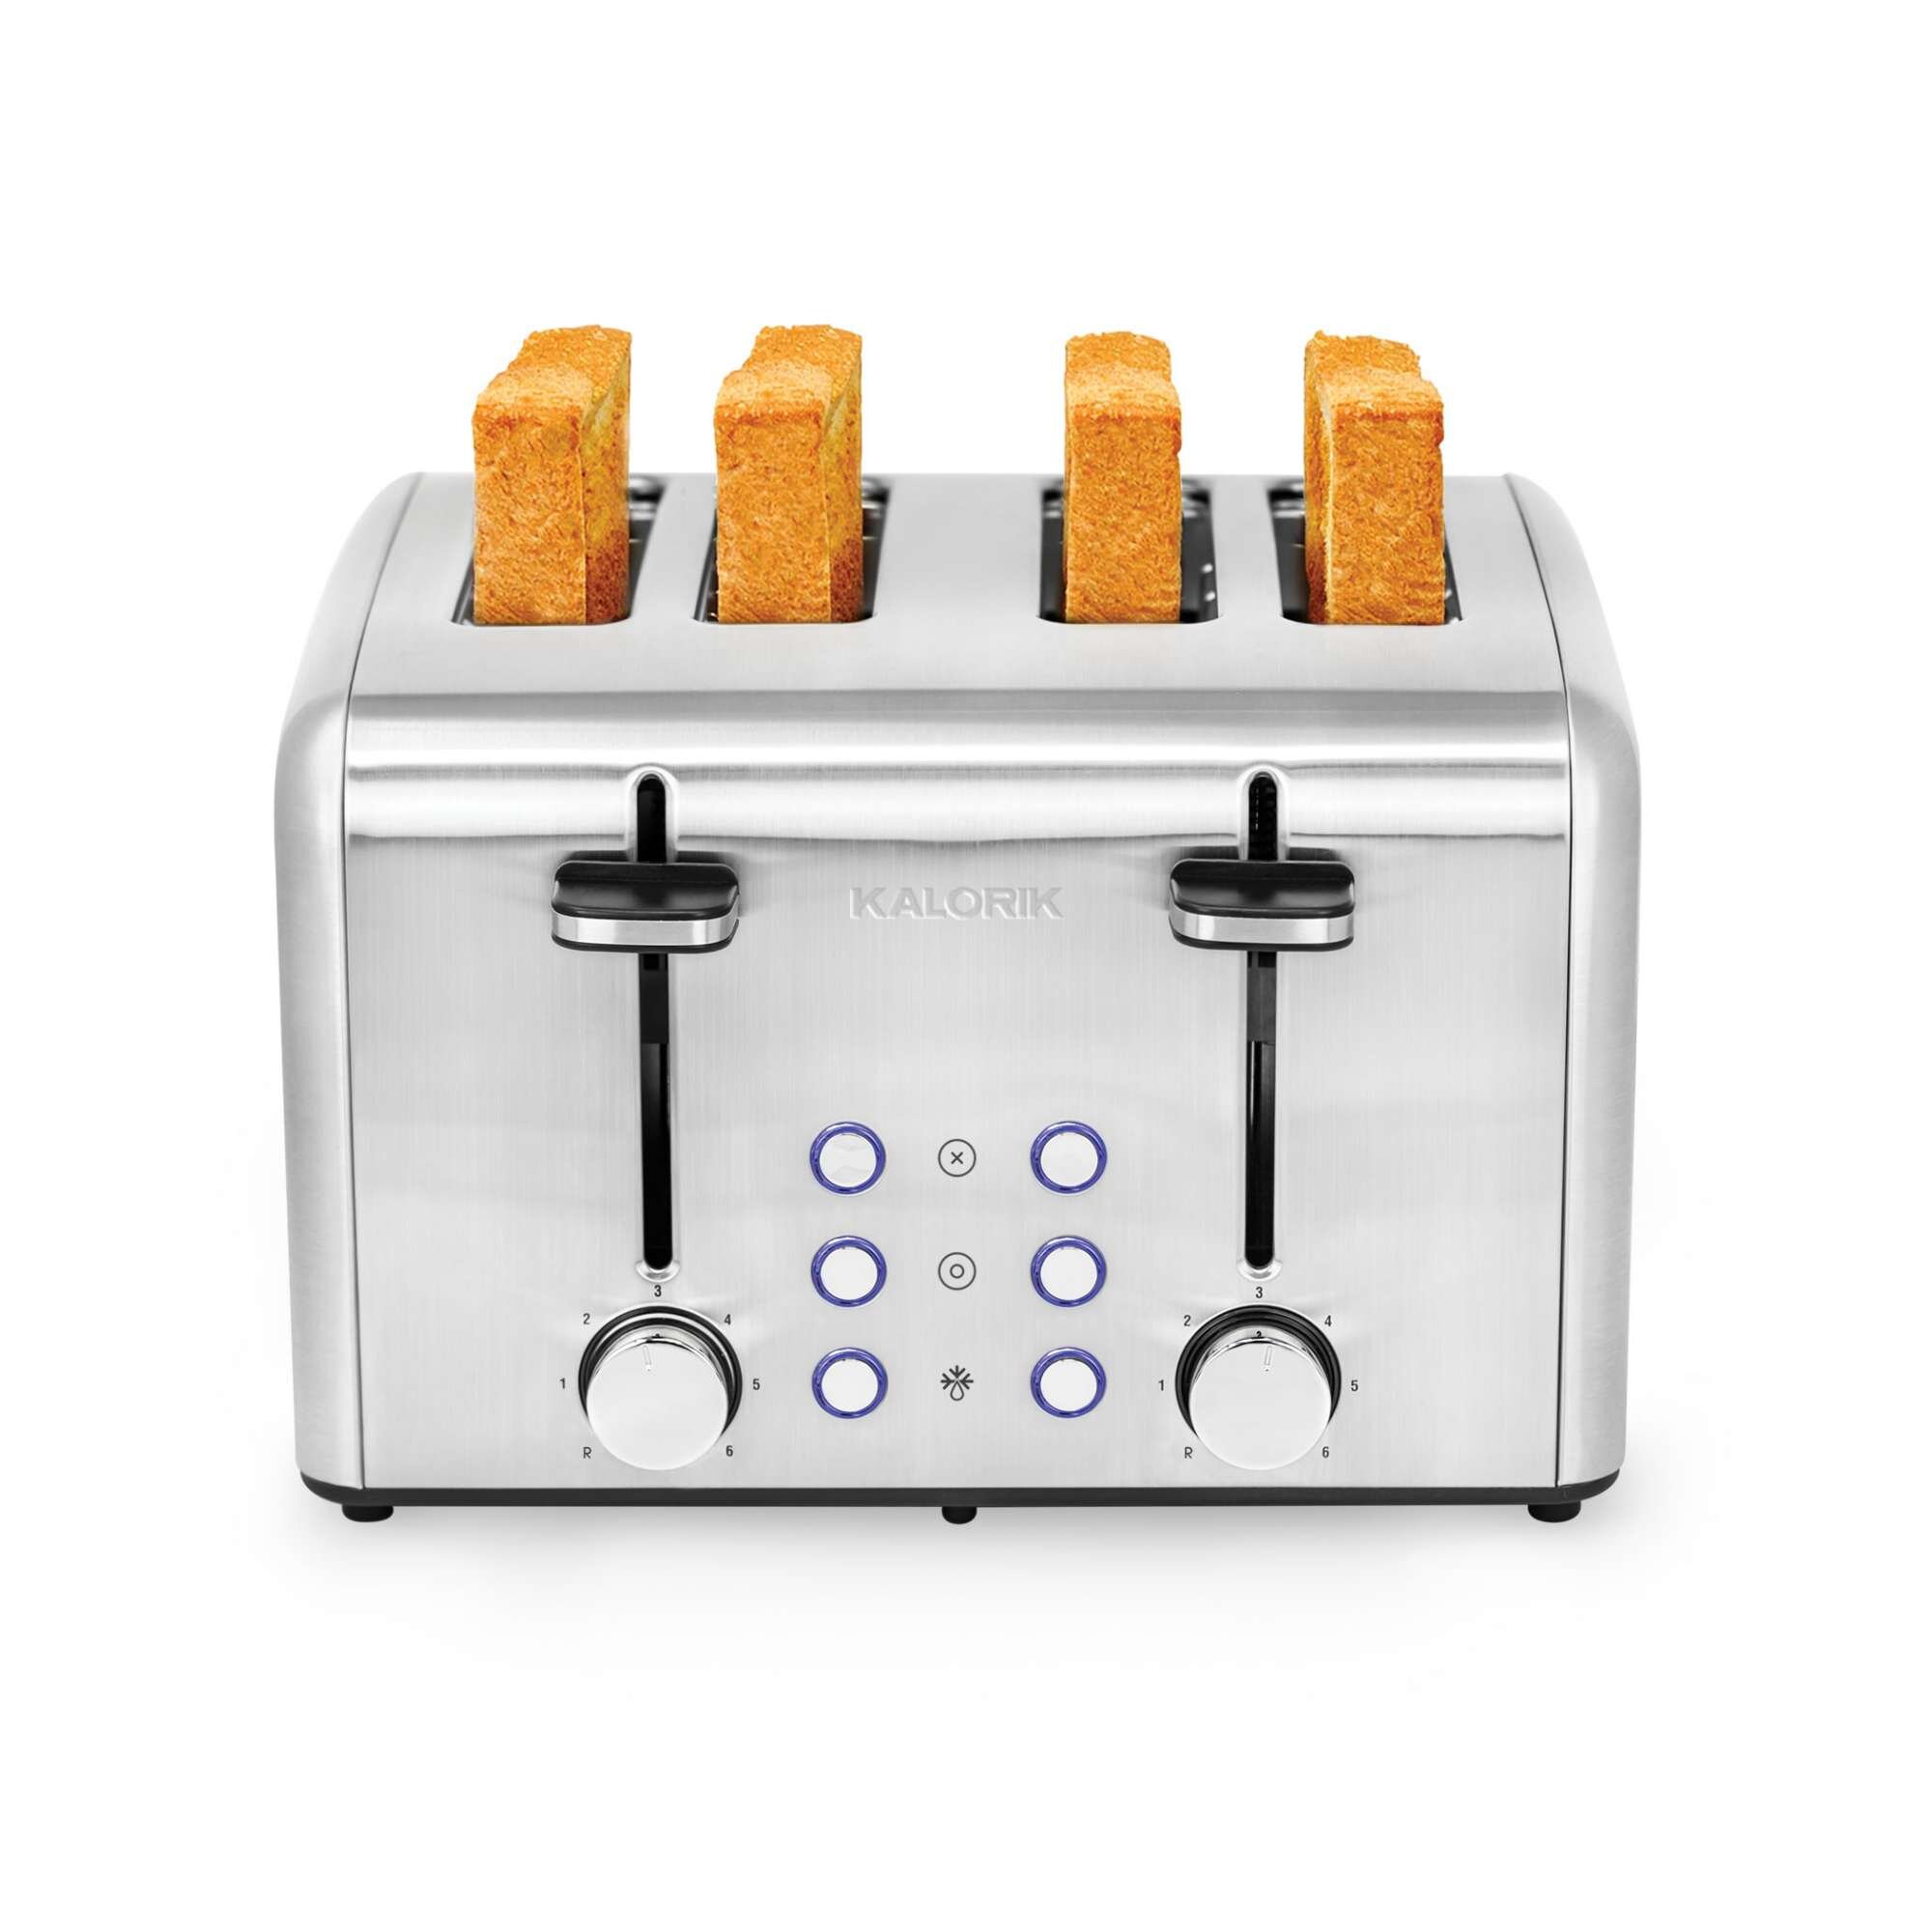 https://assets.wfcdn.com/im/09714984/compr-r85/1490/149075594/kalorik-4-slice-toaster.jpg